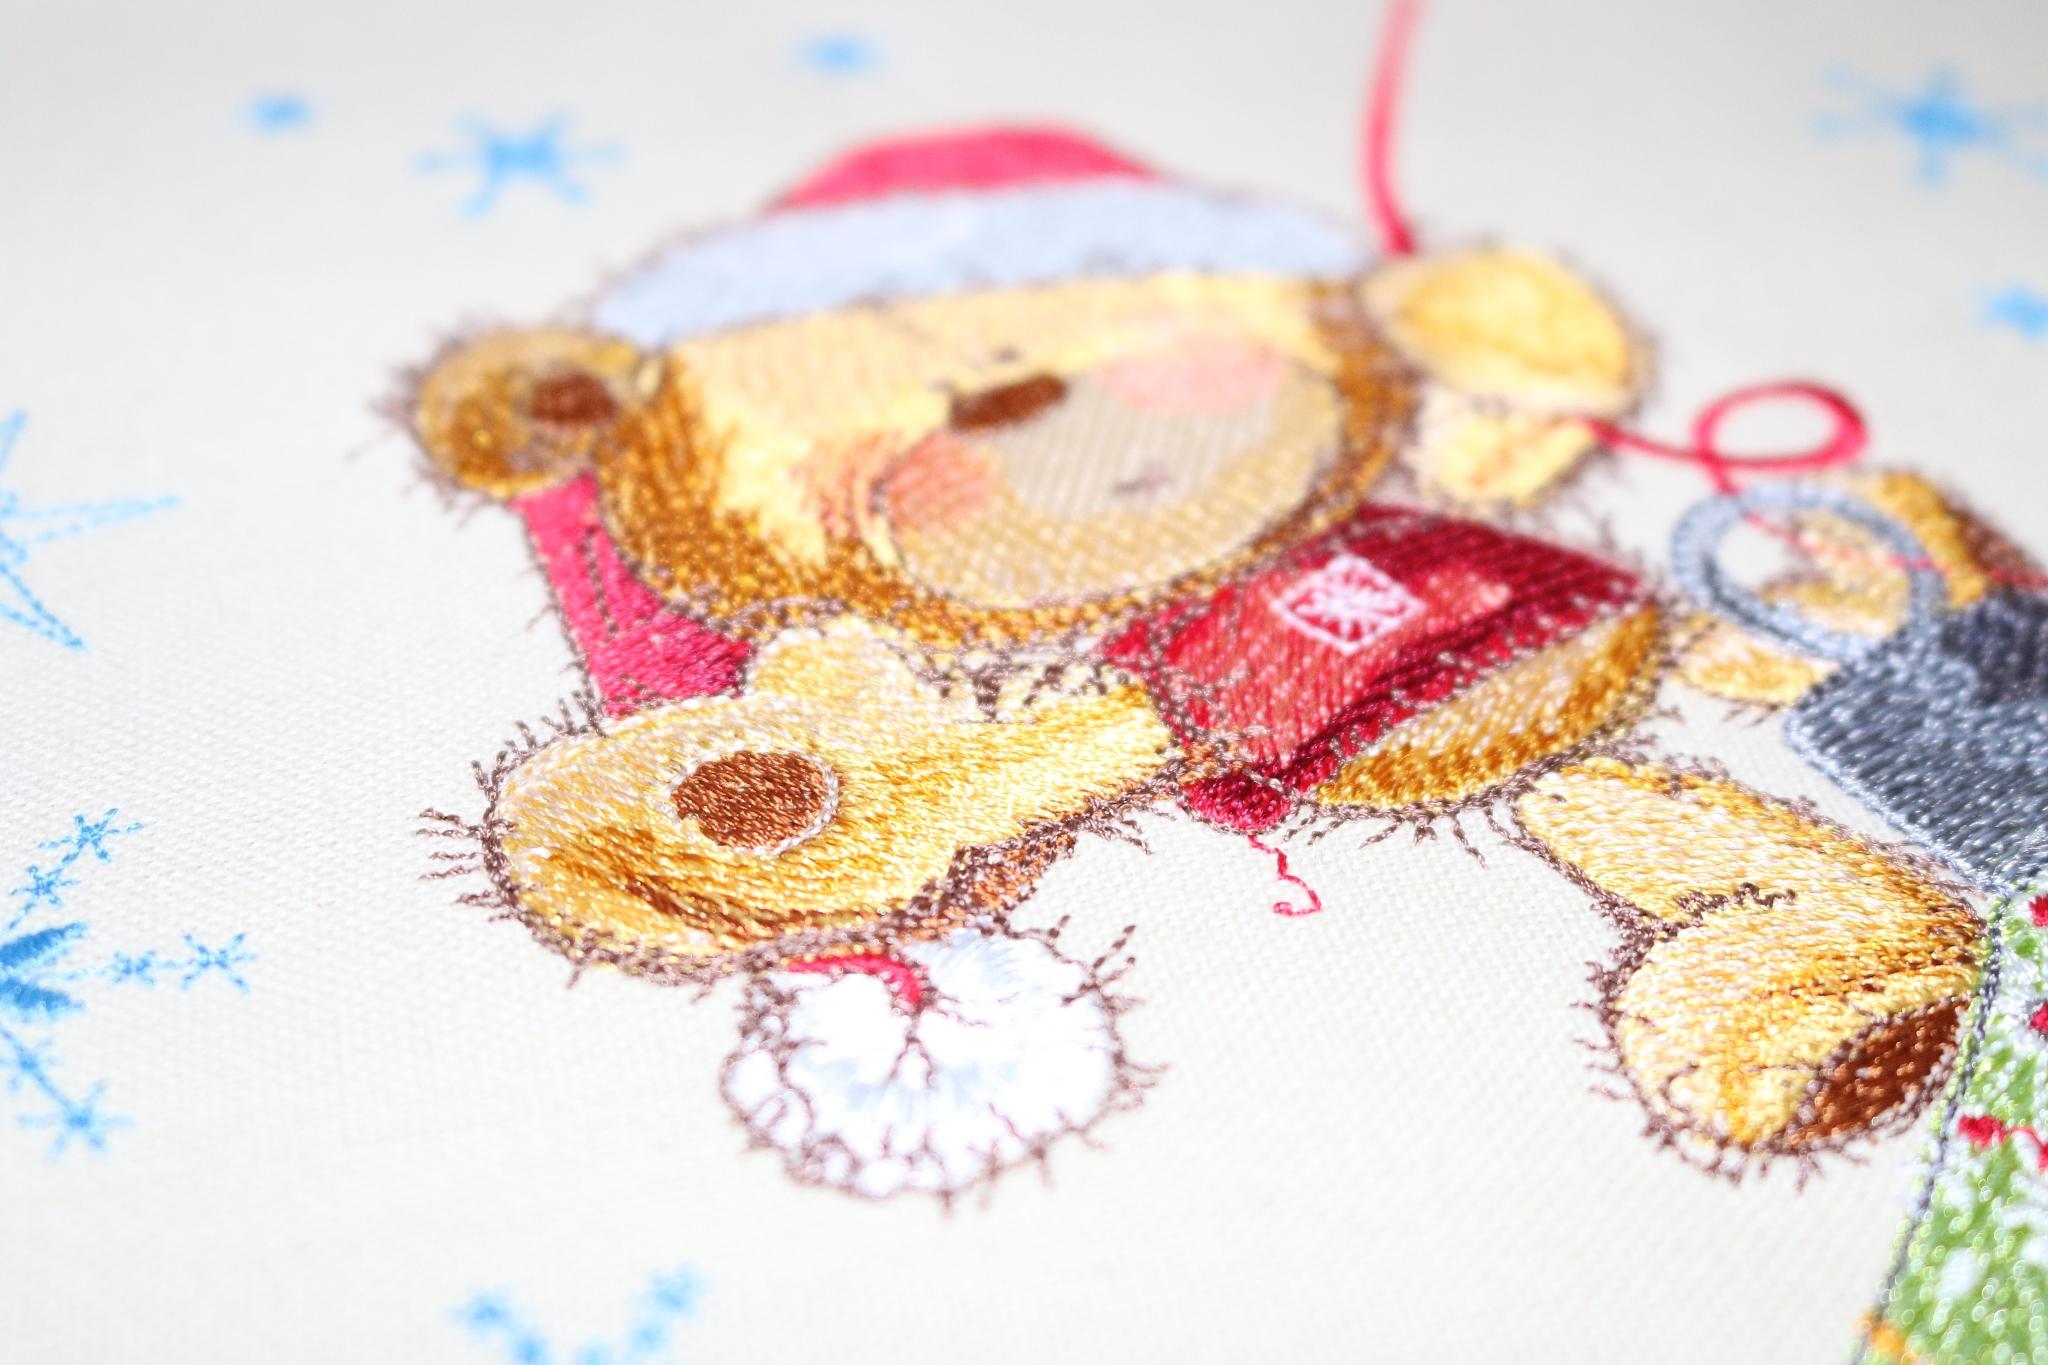 Work on Teddy bear on Christmas ball design